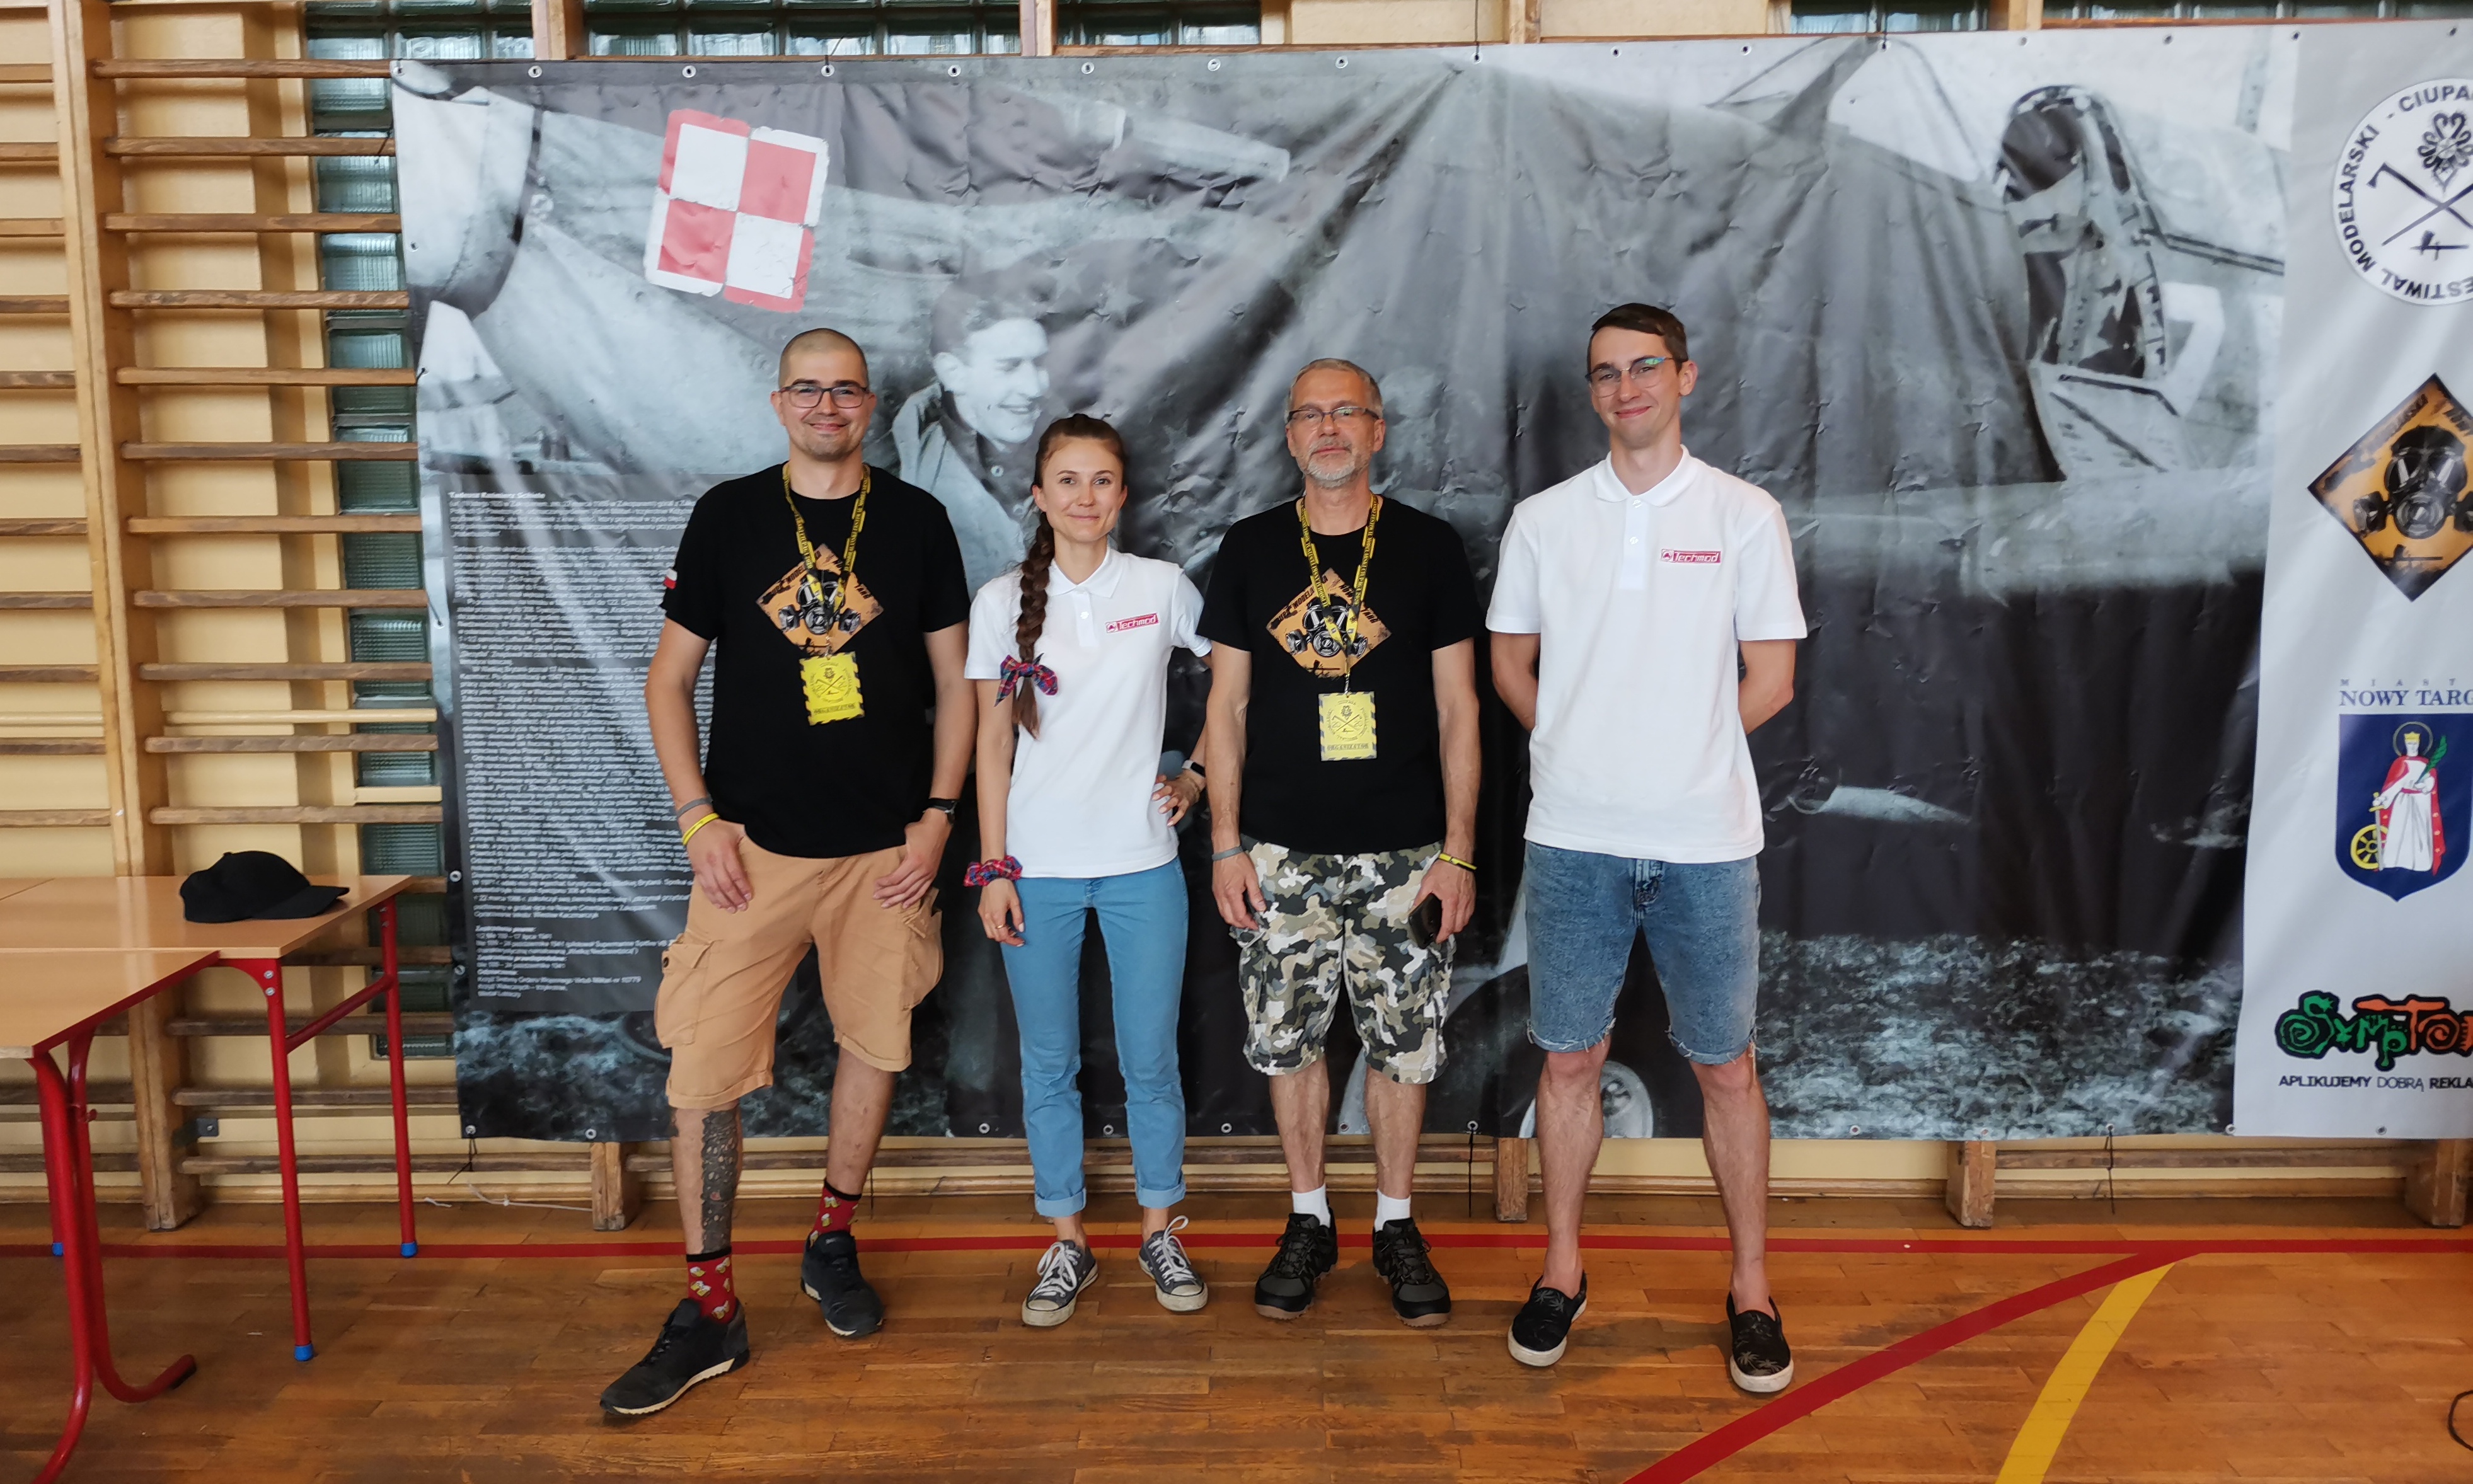 II Festiwal Podhalański Ciupaga 2021 organizatorzy sponsor Techmod